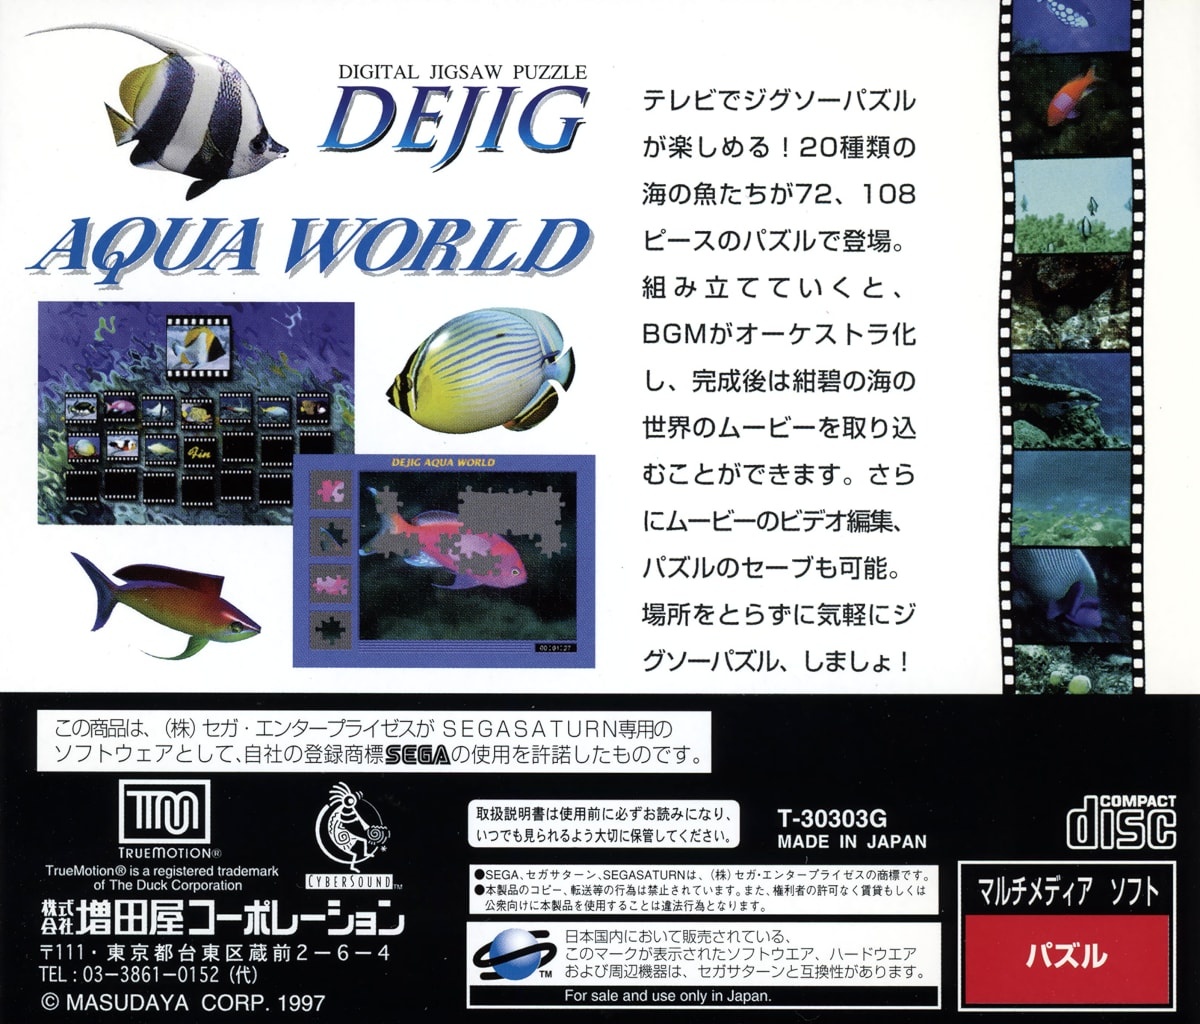 Capa do jogo Dejig Aqua World